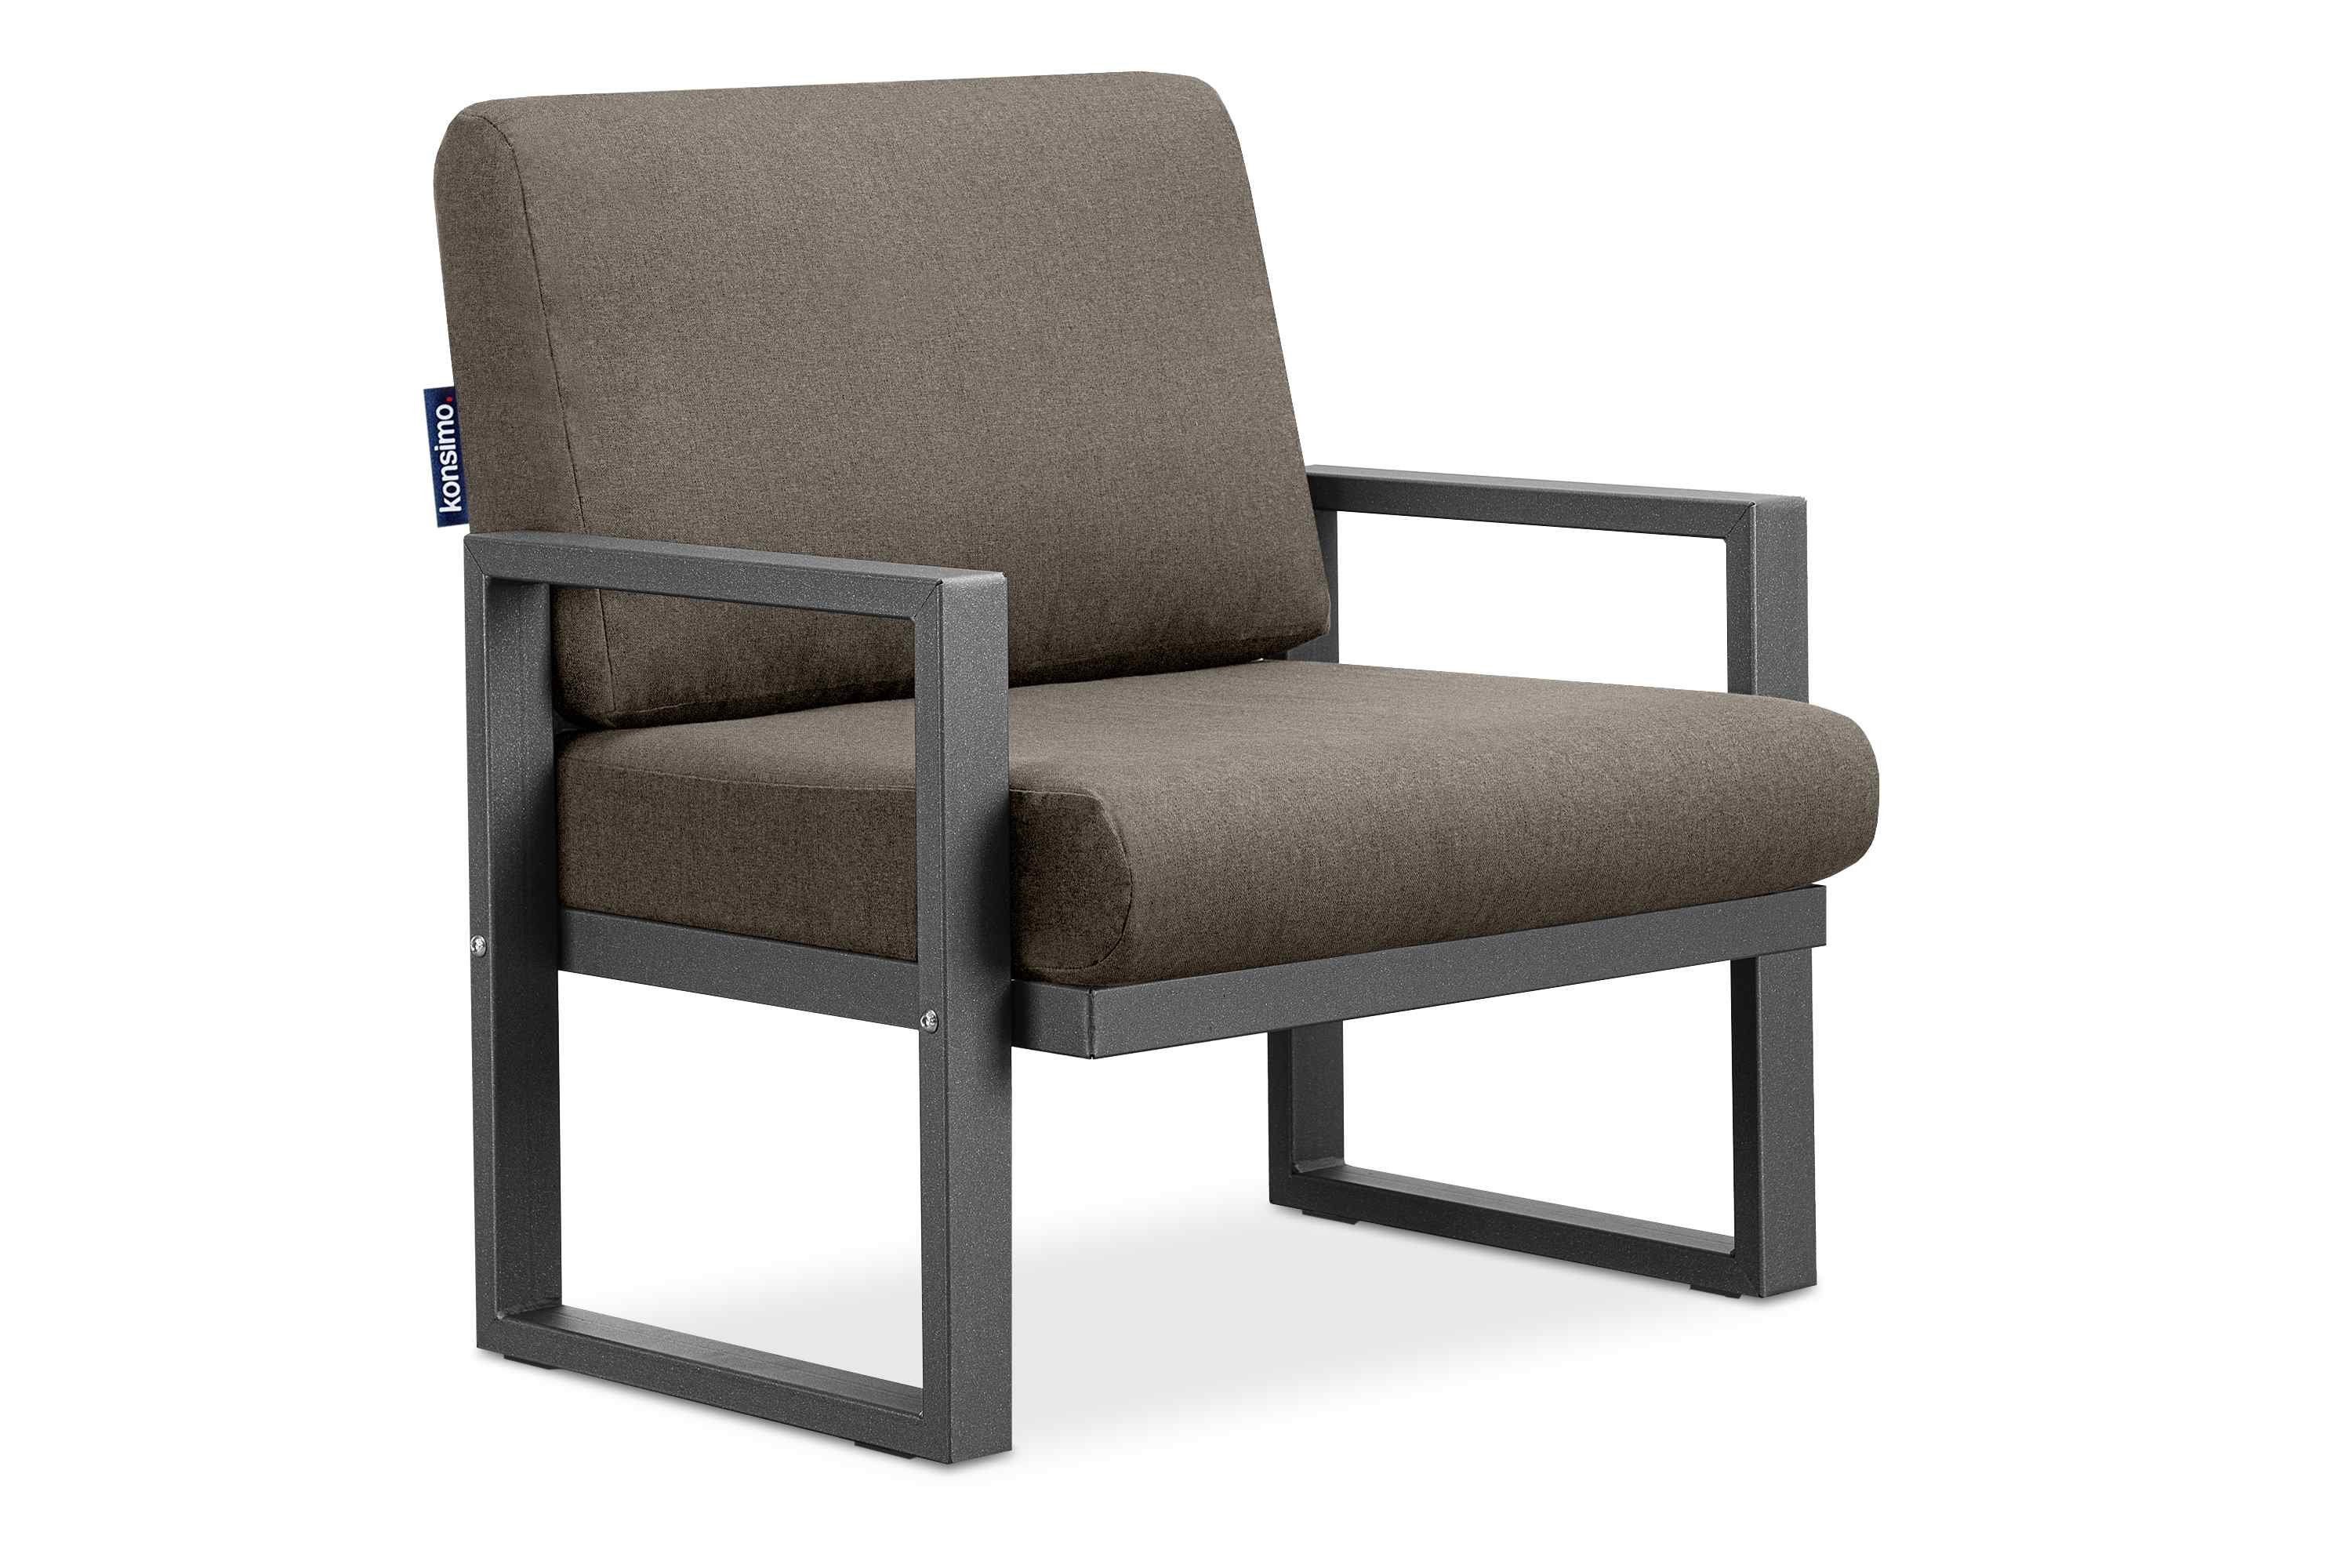 Konsimo Gartensessel FRENA Garten-Sessel (1x Sessel), pflegeleicht, bequeme Sitz- und Rückenkissen, schmutz- und wasserabweisend, UV-Beständigkeit anthrazit/beige